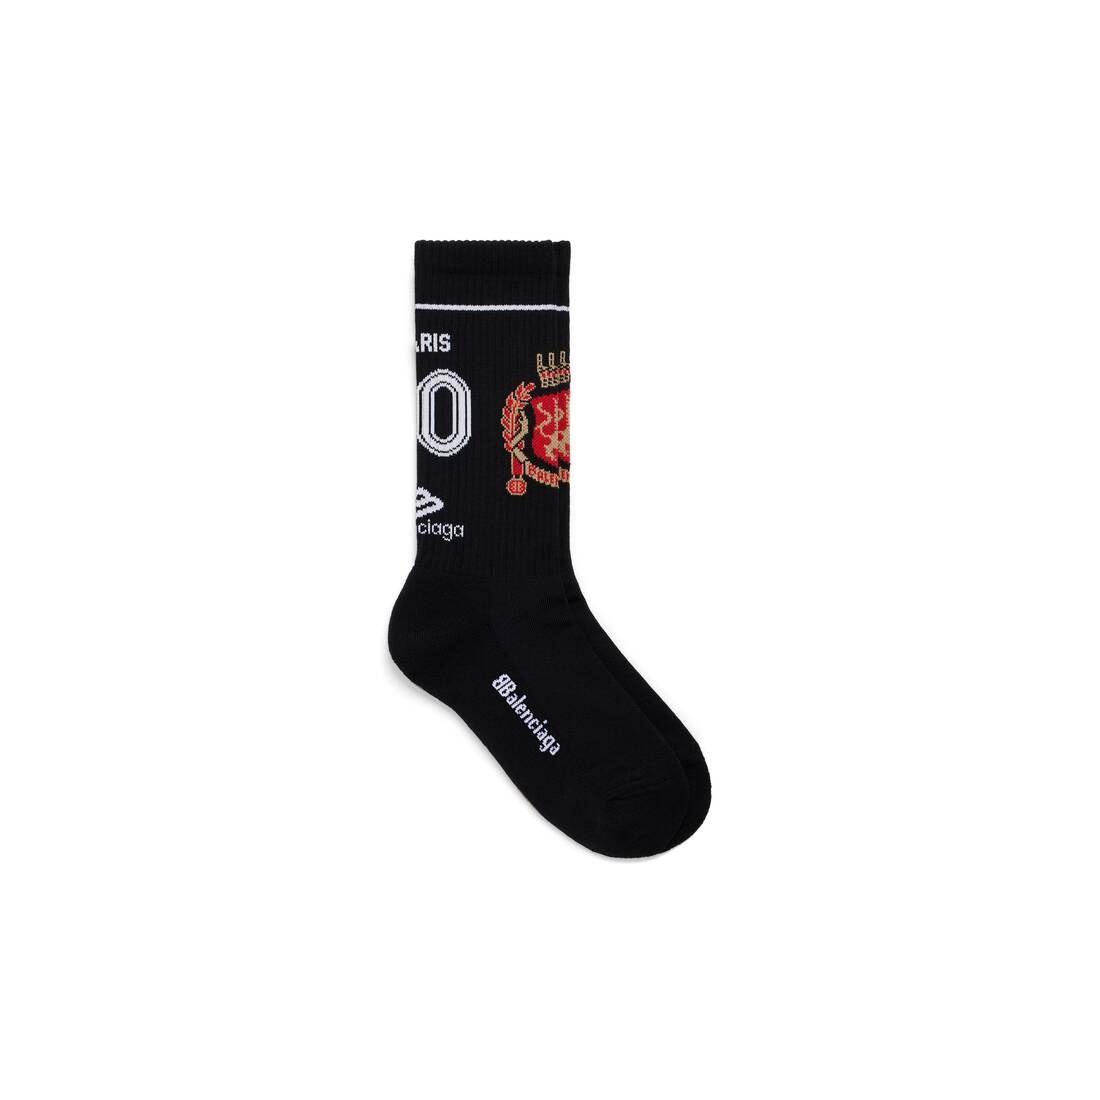 Men's Paris Soccer Socks in Black - 1